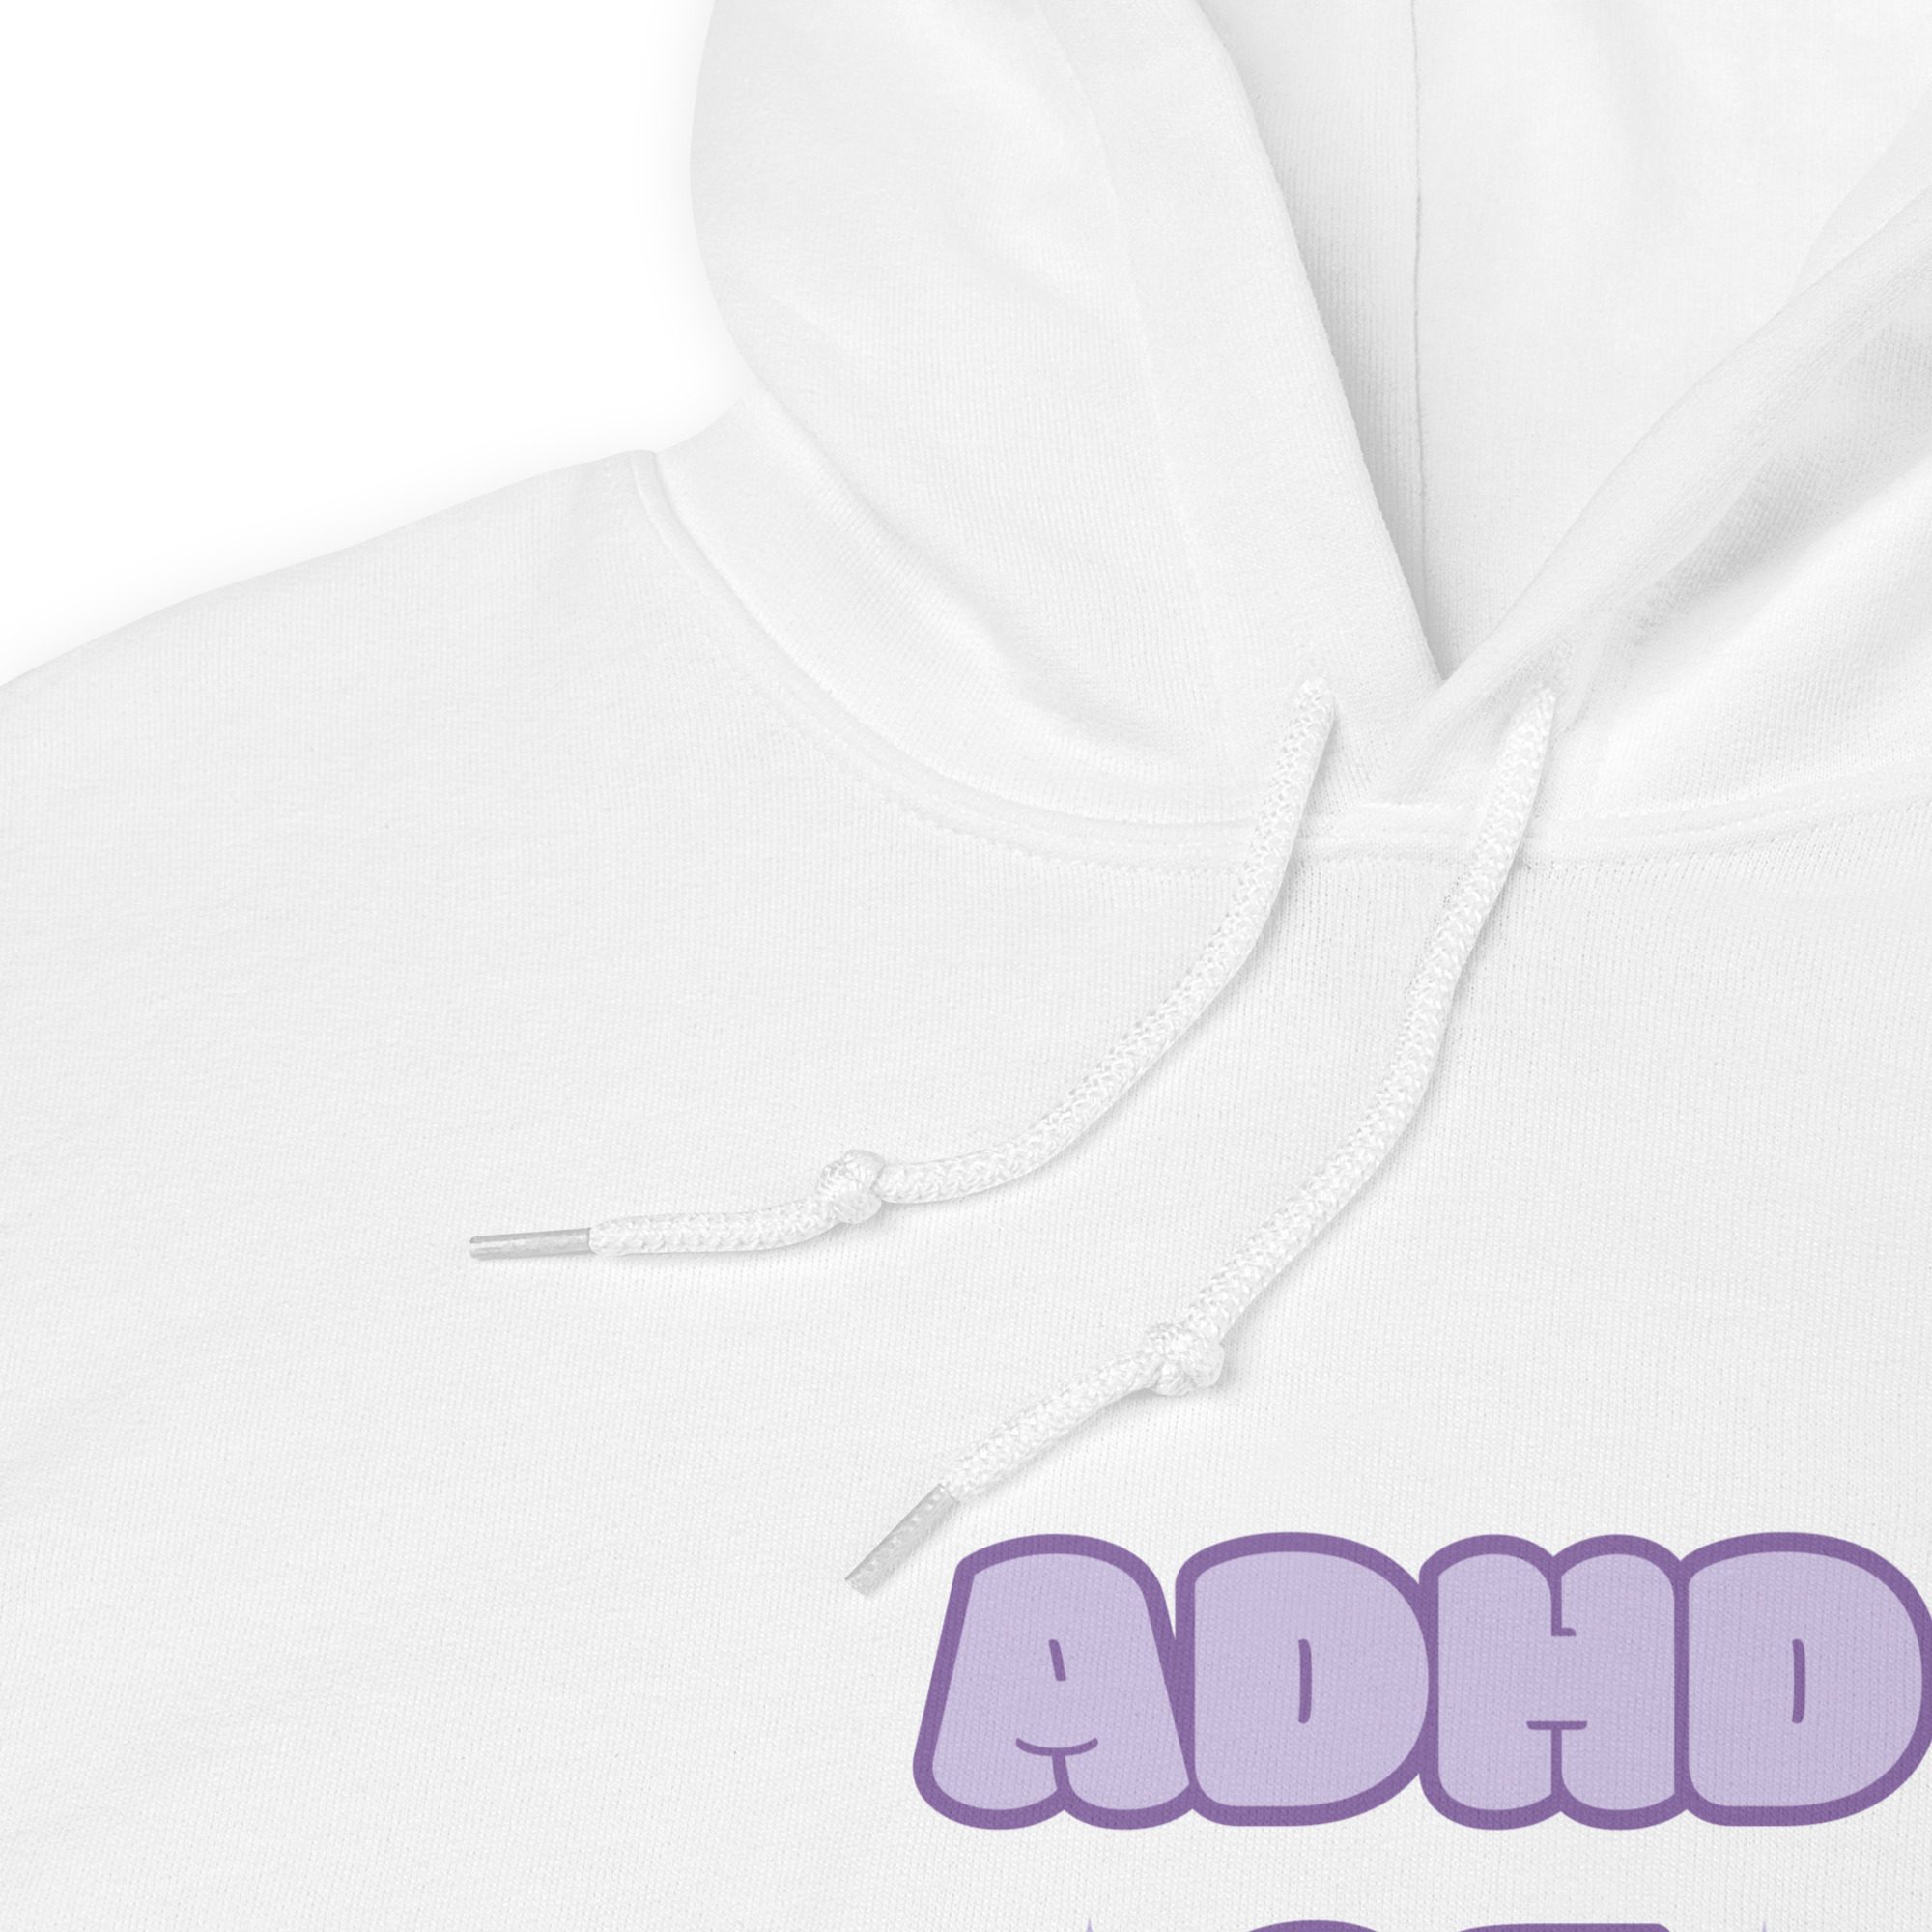 ADHD AF Unisex Hoodie